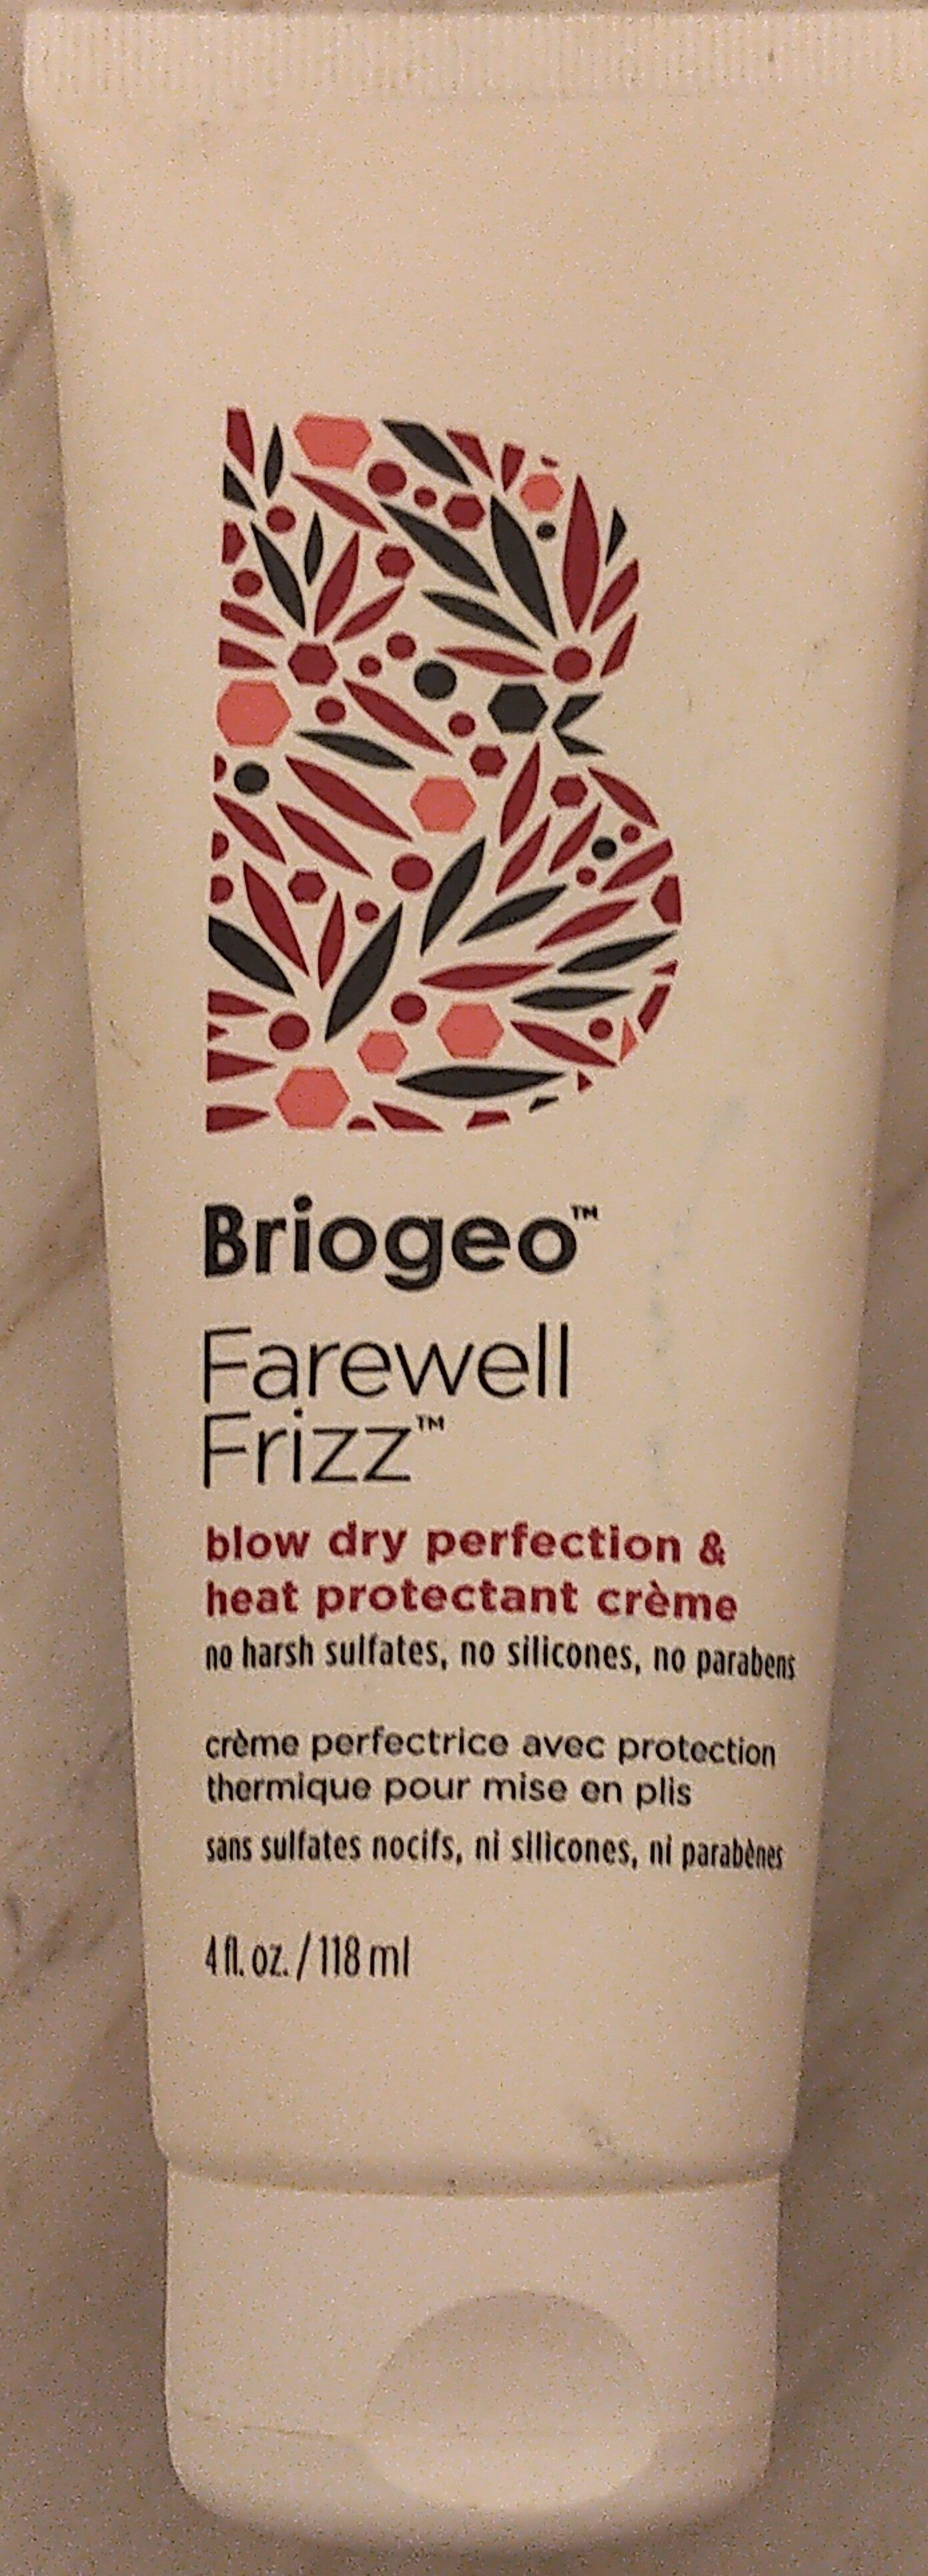 Briogeo Farewell Frizz Blow Dry Perfection & Heat Protectant Crème - Produkt - en